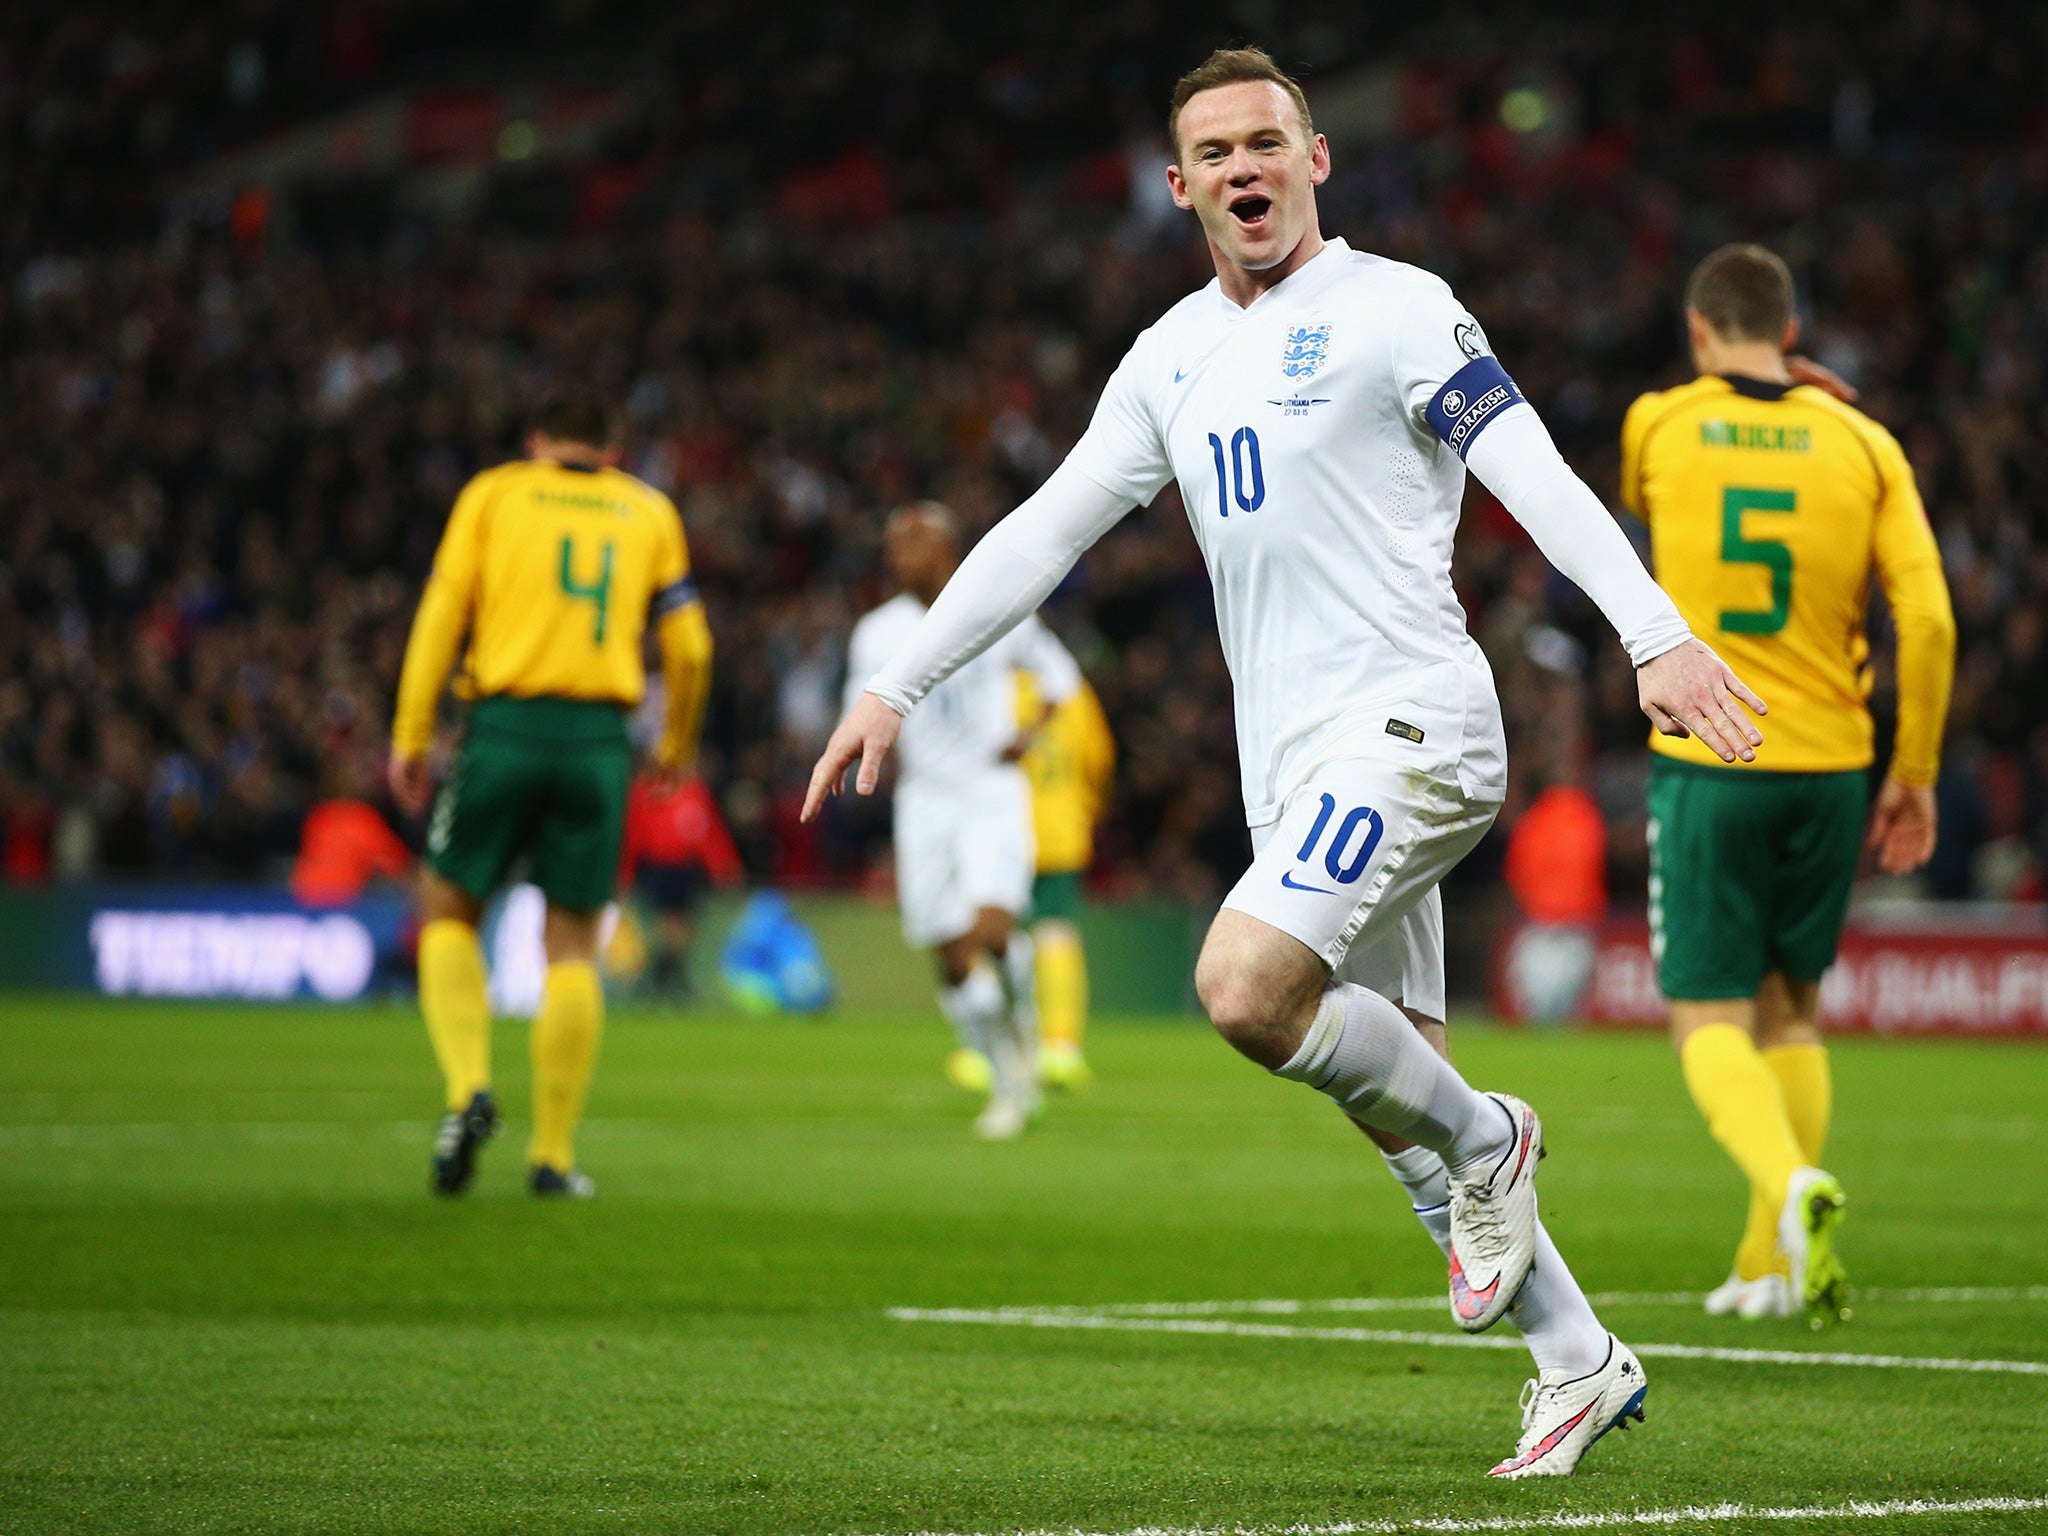 Wayne Rooney celebrates scoring against Lithuania